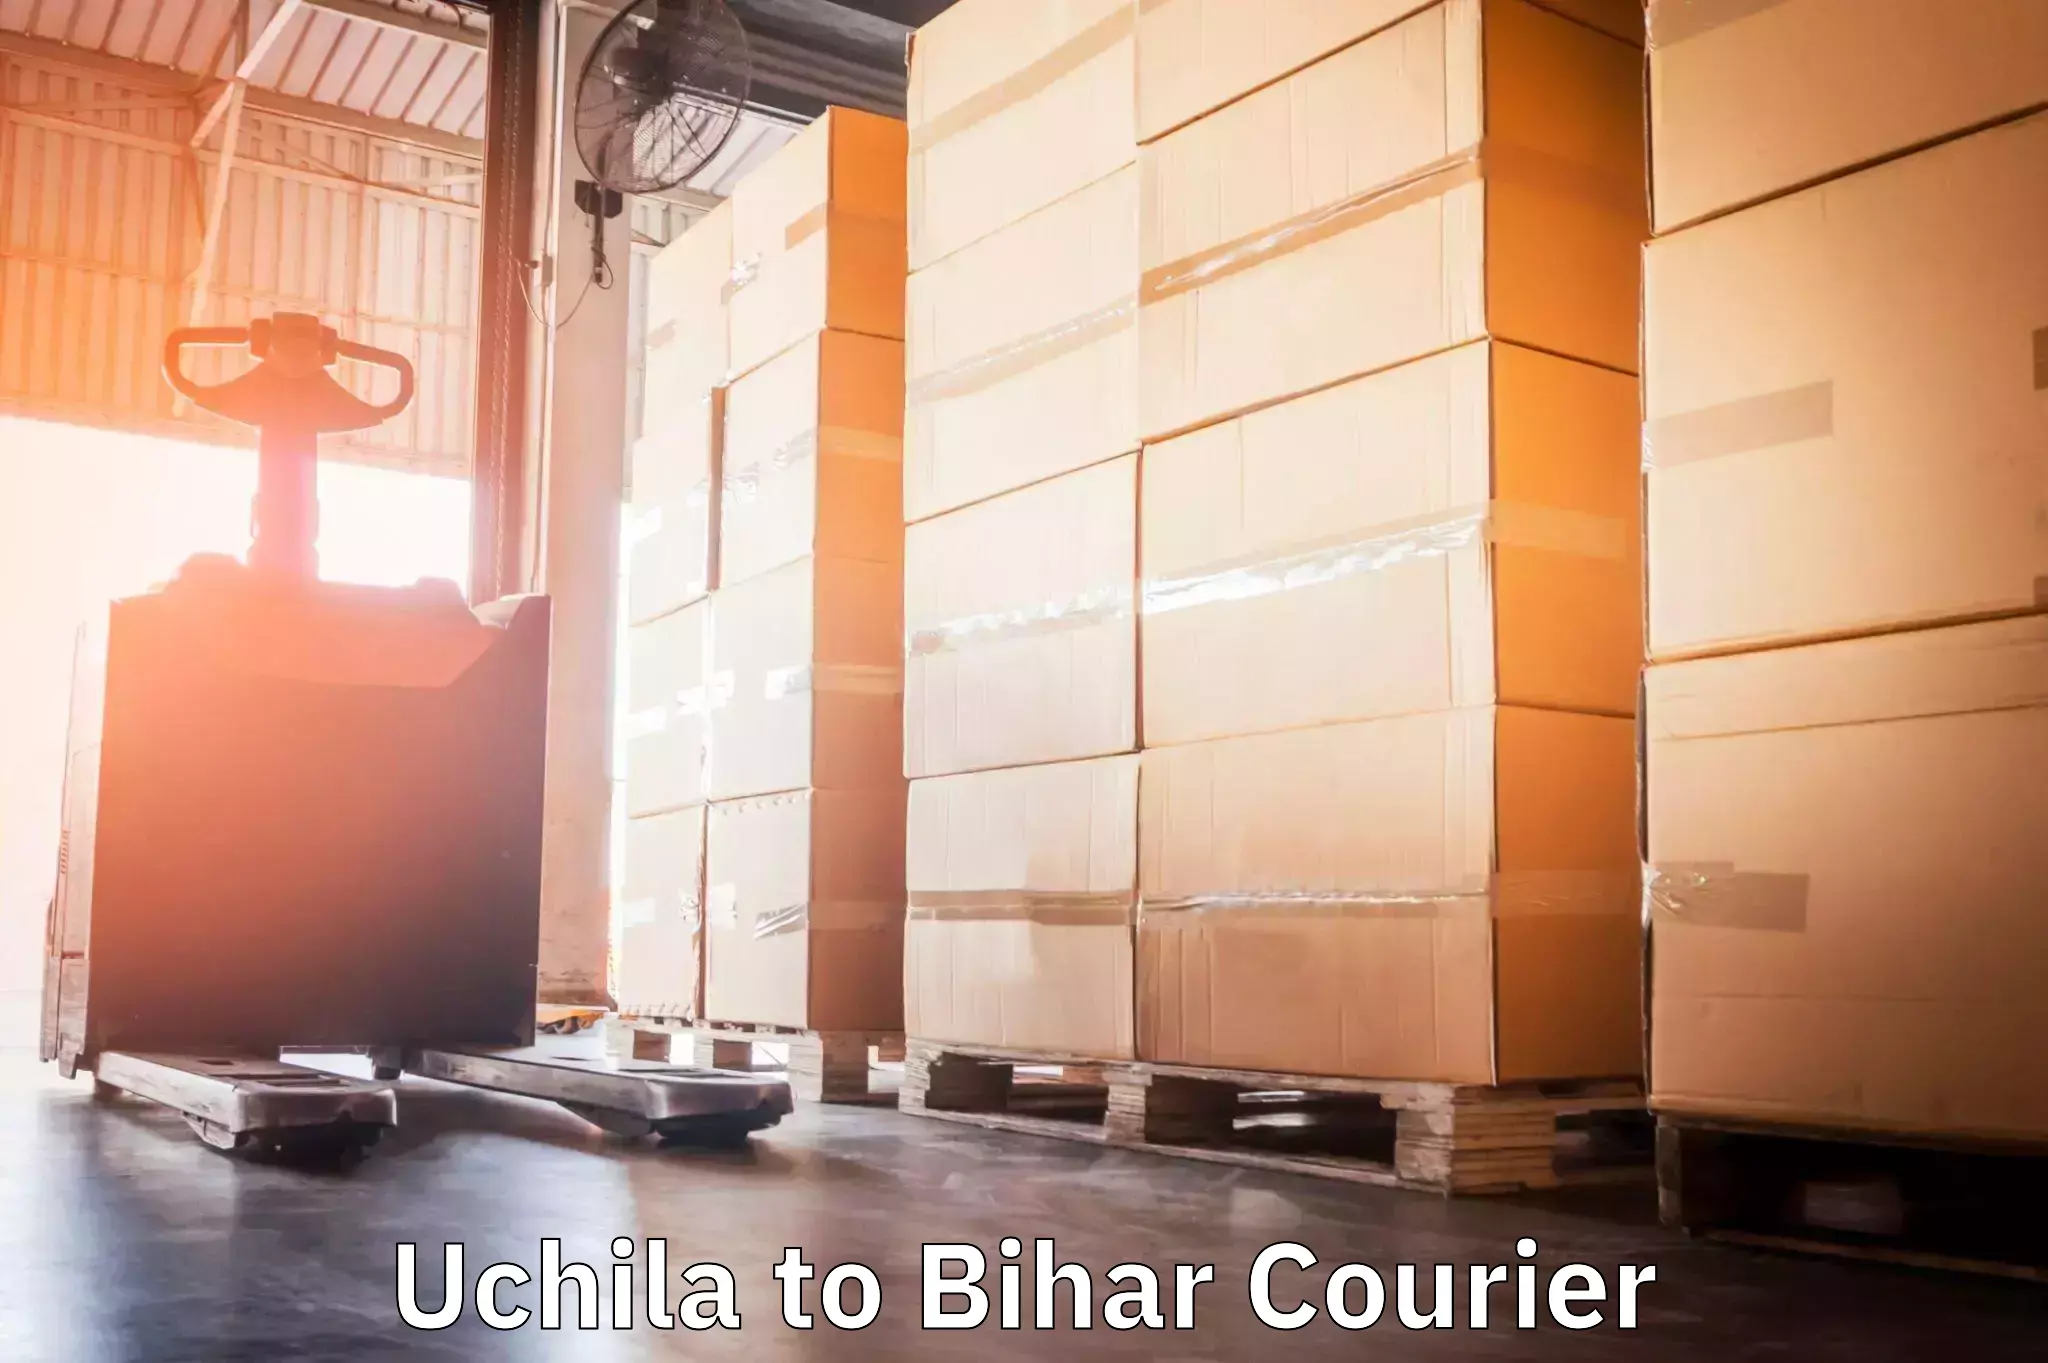 Customized delivery solutions Uchila to Lakhisarai